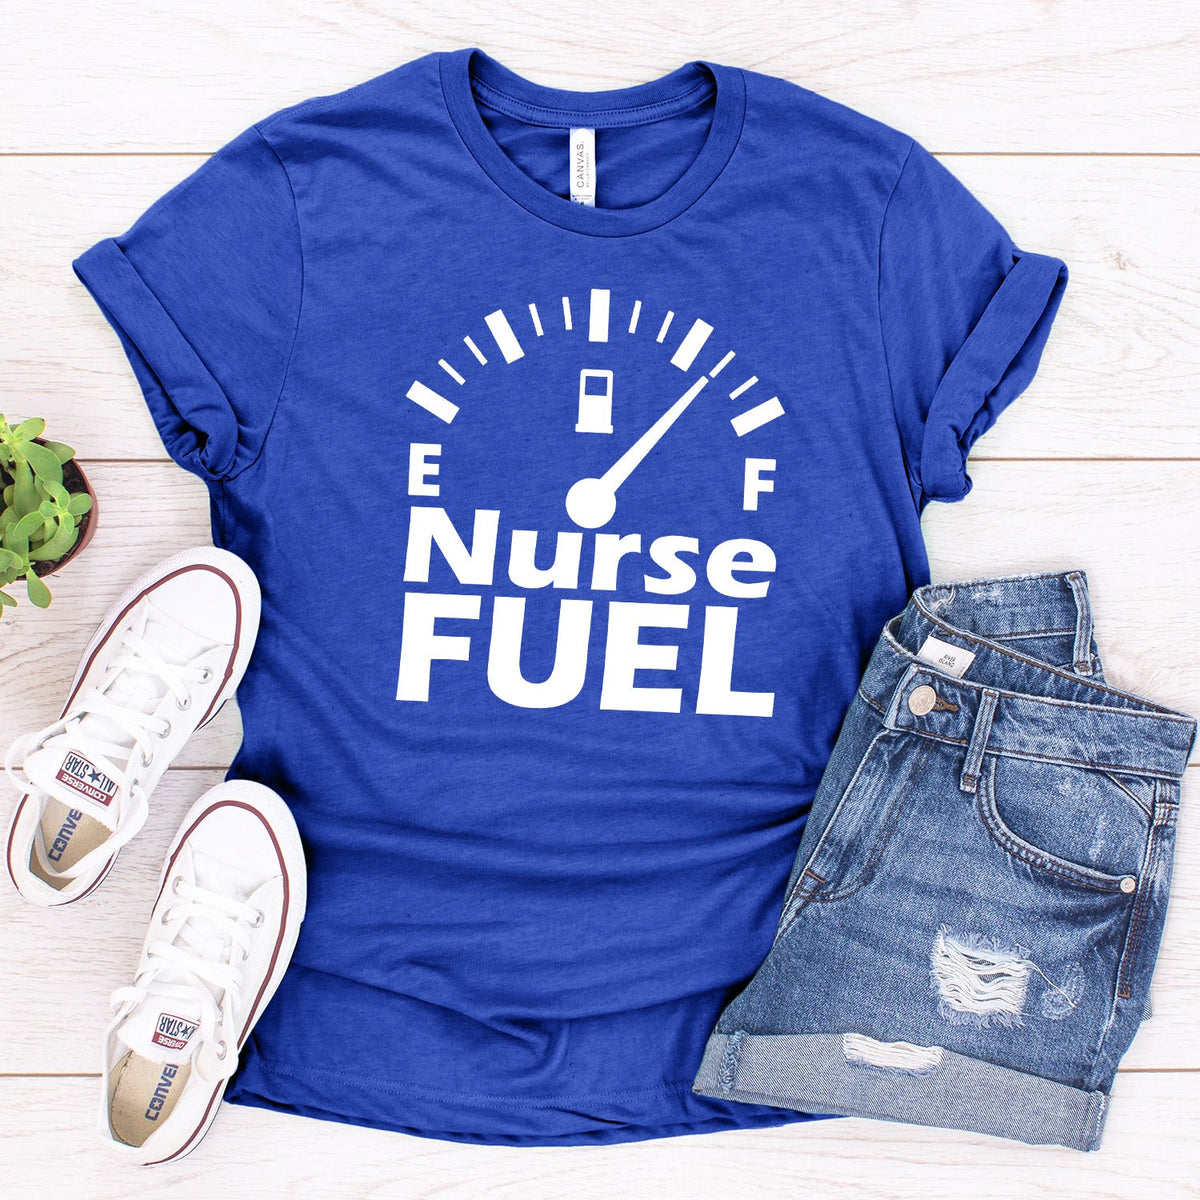 Nurse Fuel - Short Sleeve Tee Shirt